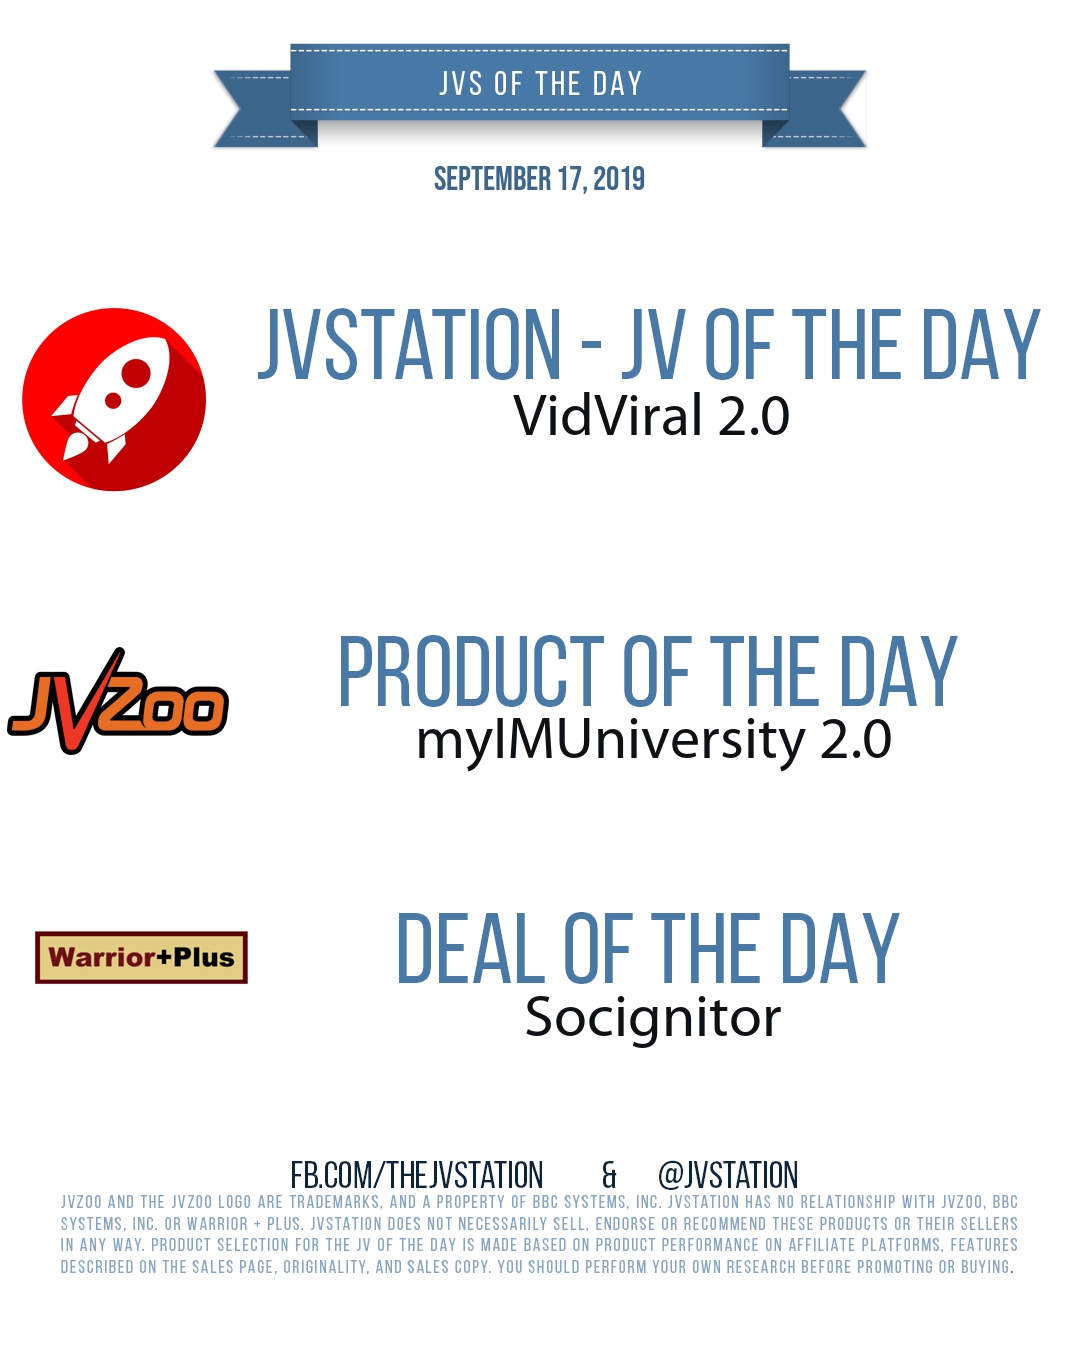 JVs of the day - September 17, 2019